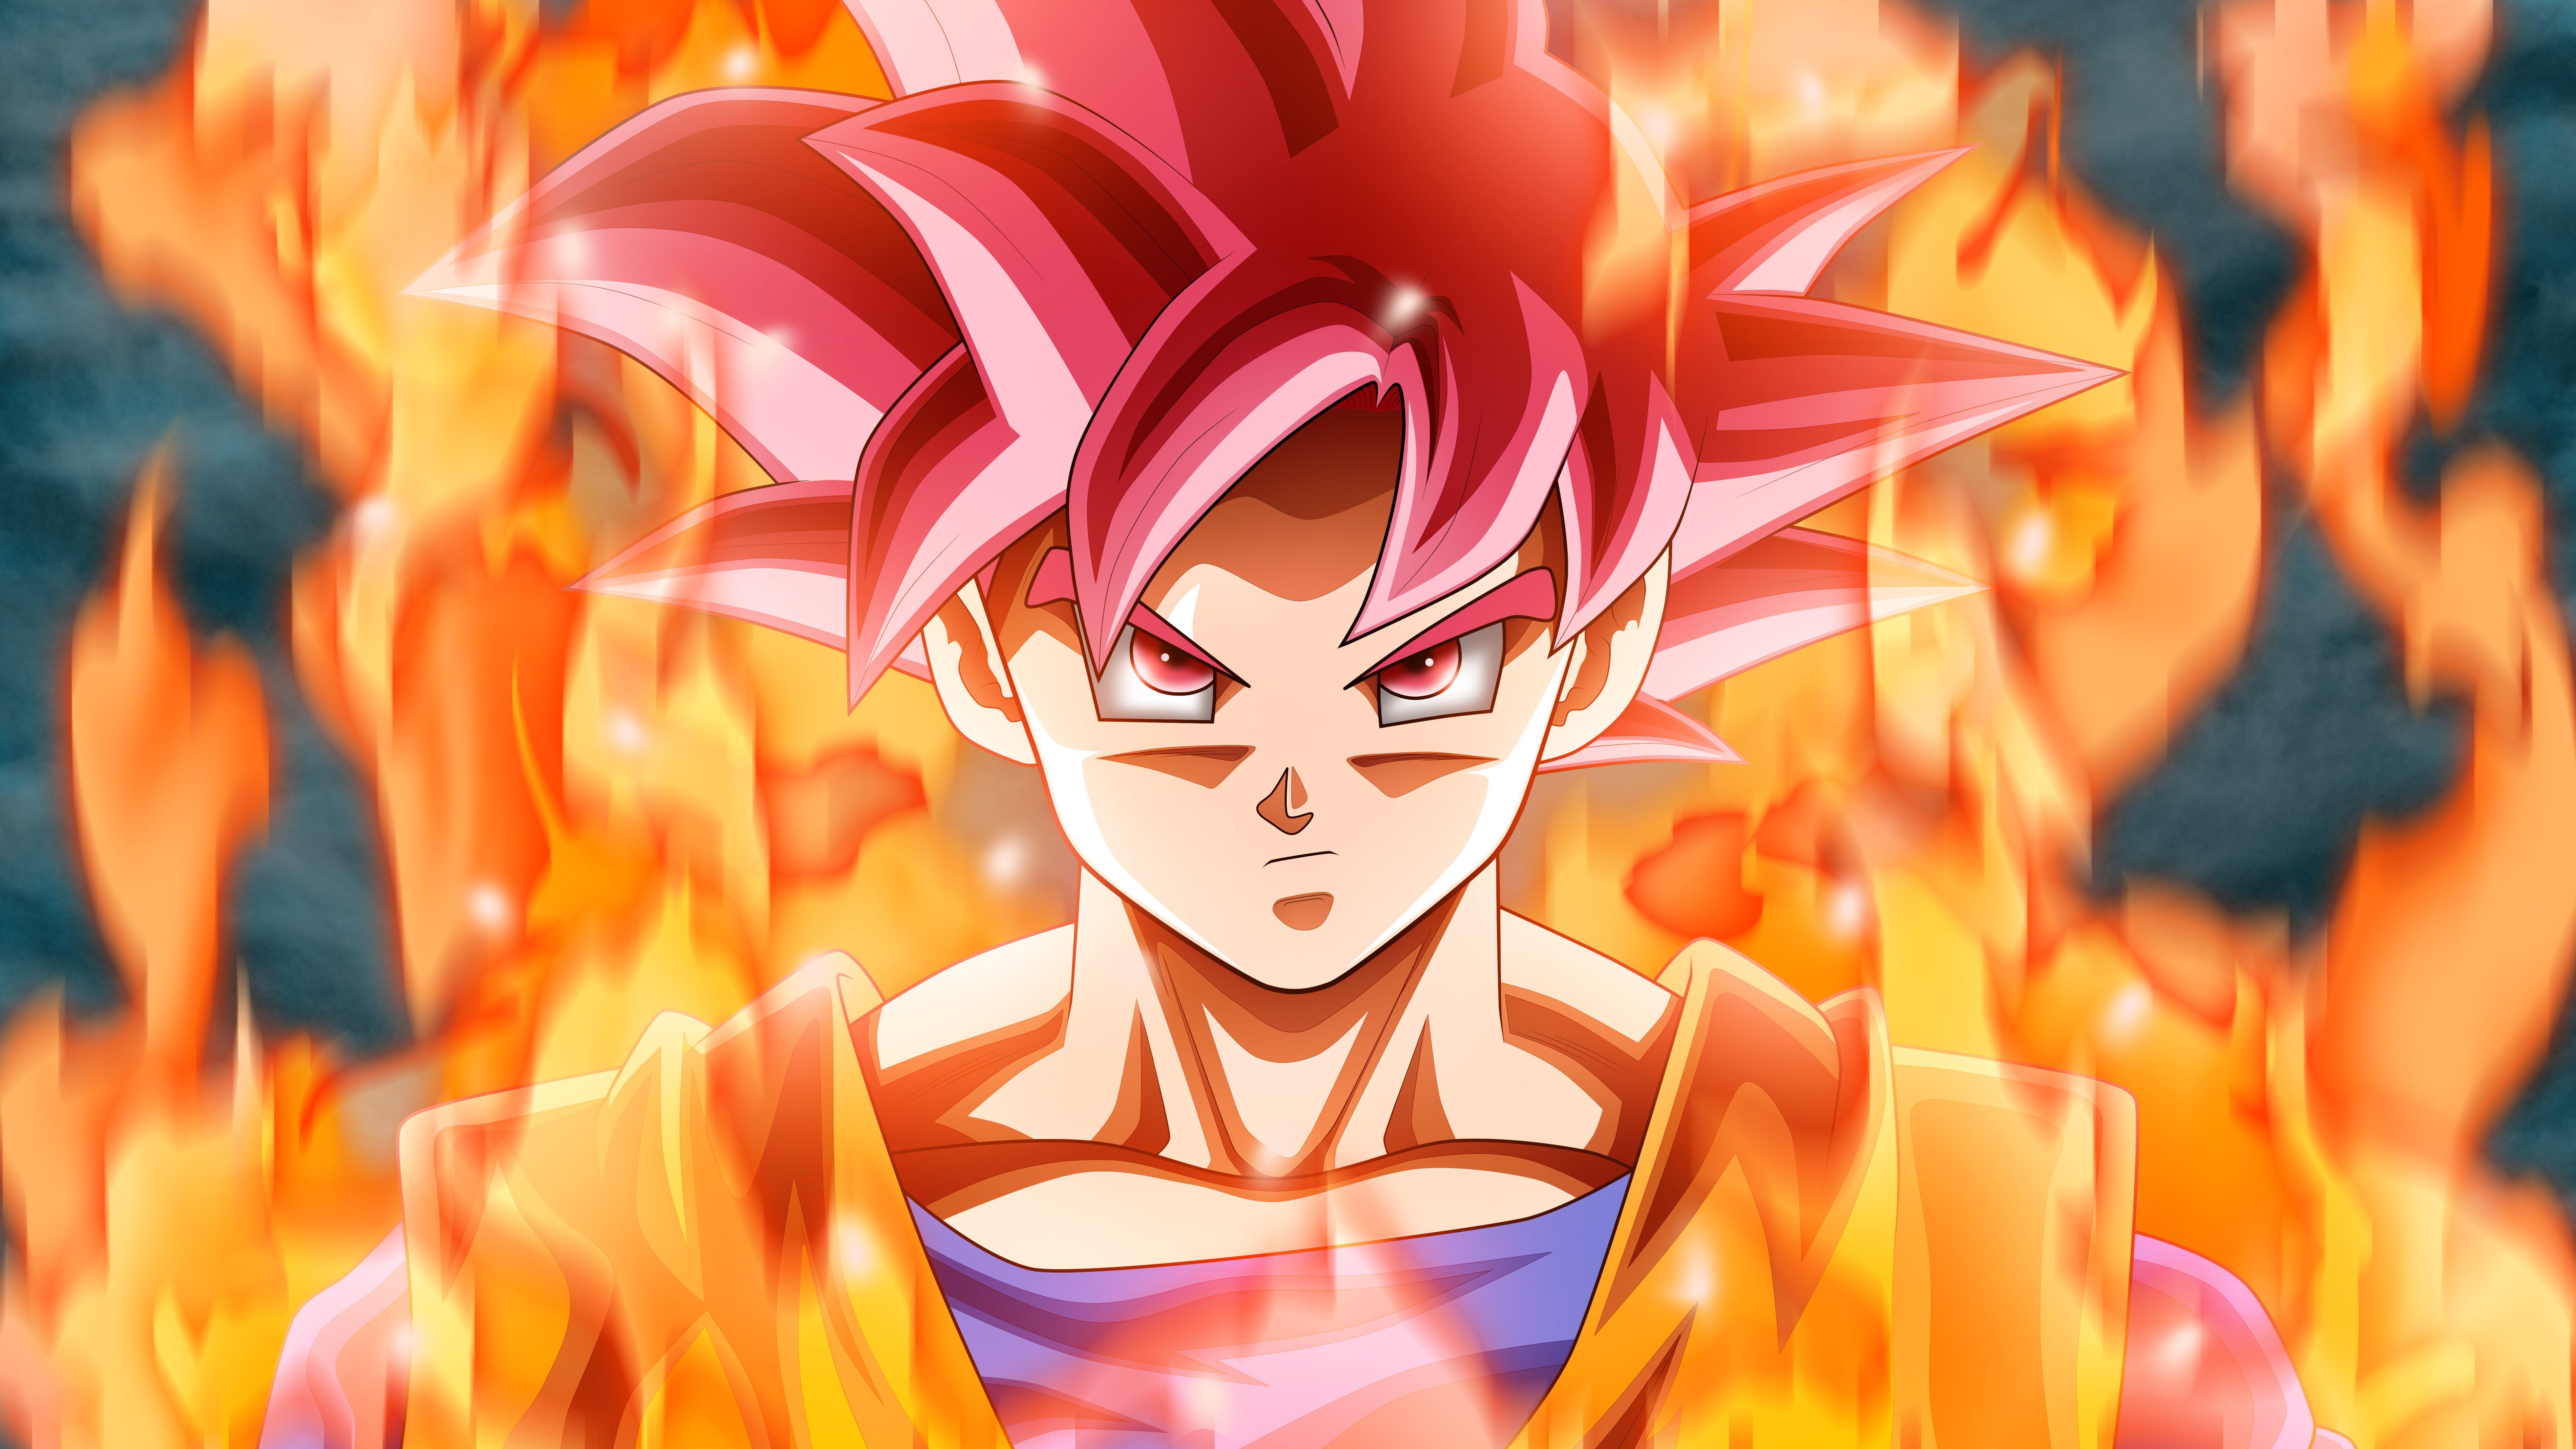 Dragon Ball Z Goku Super Saiyan God Wallpapers - Top Free Dragon Ball Z